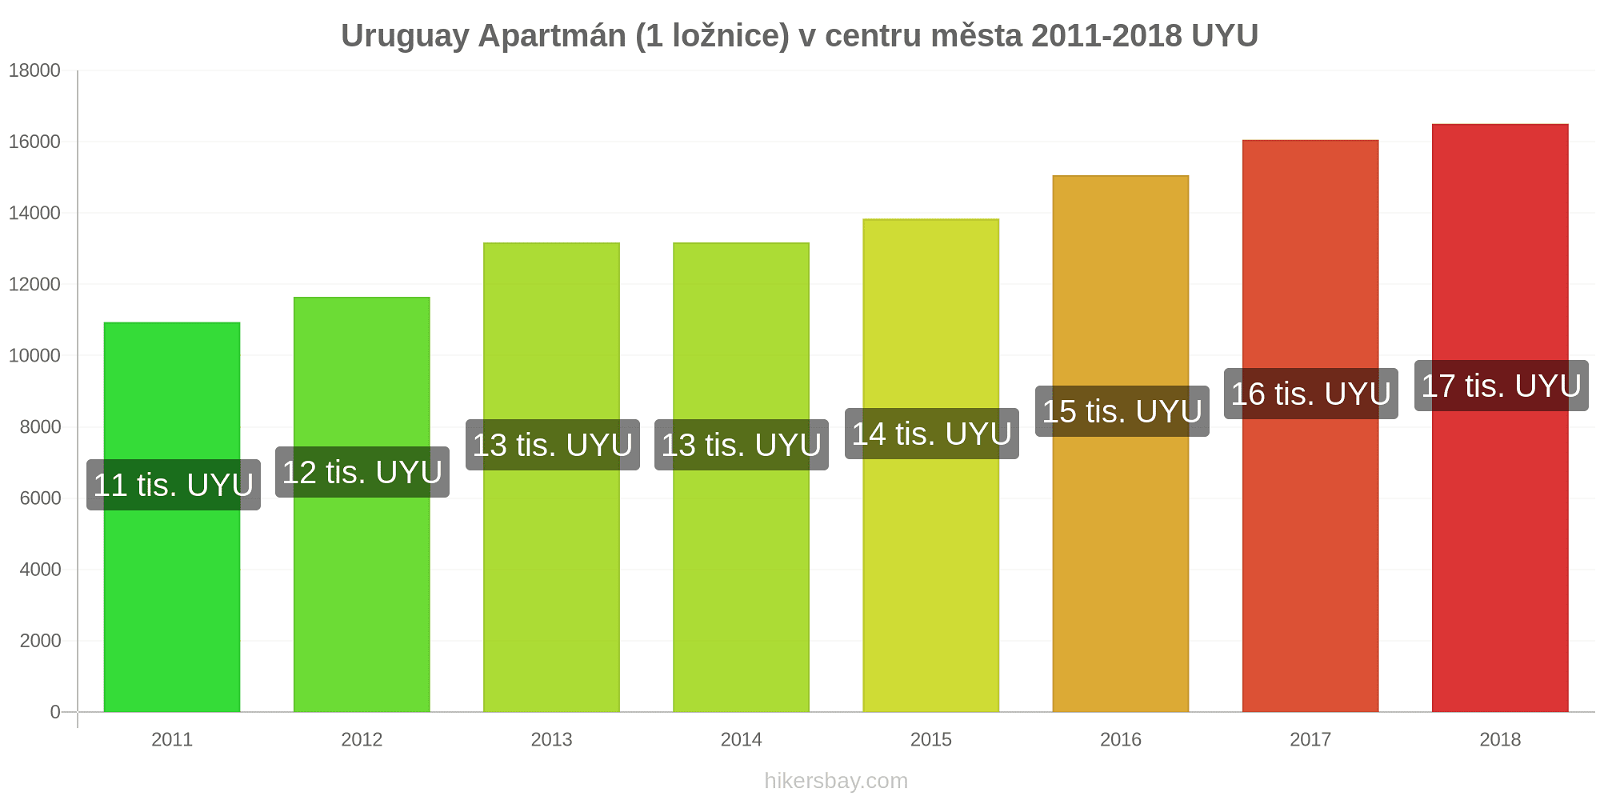 Uruguay změny cen Apartmán (1 ložnice) v centru města hikersbay.com